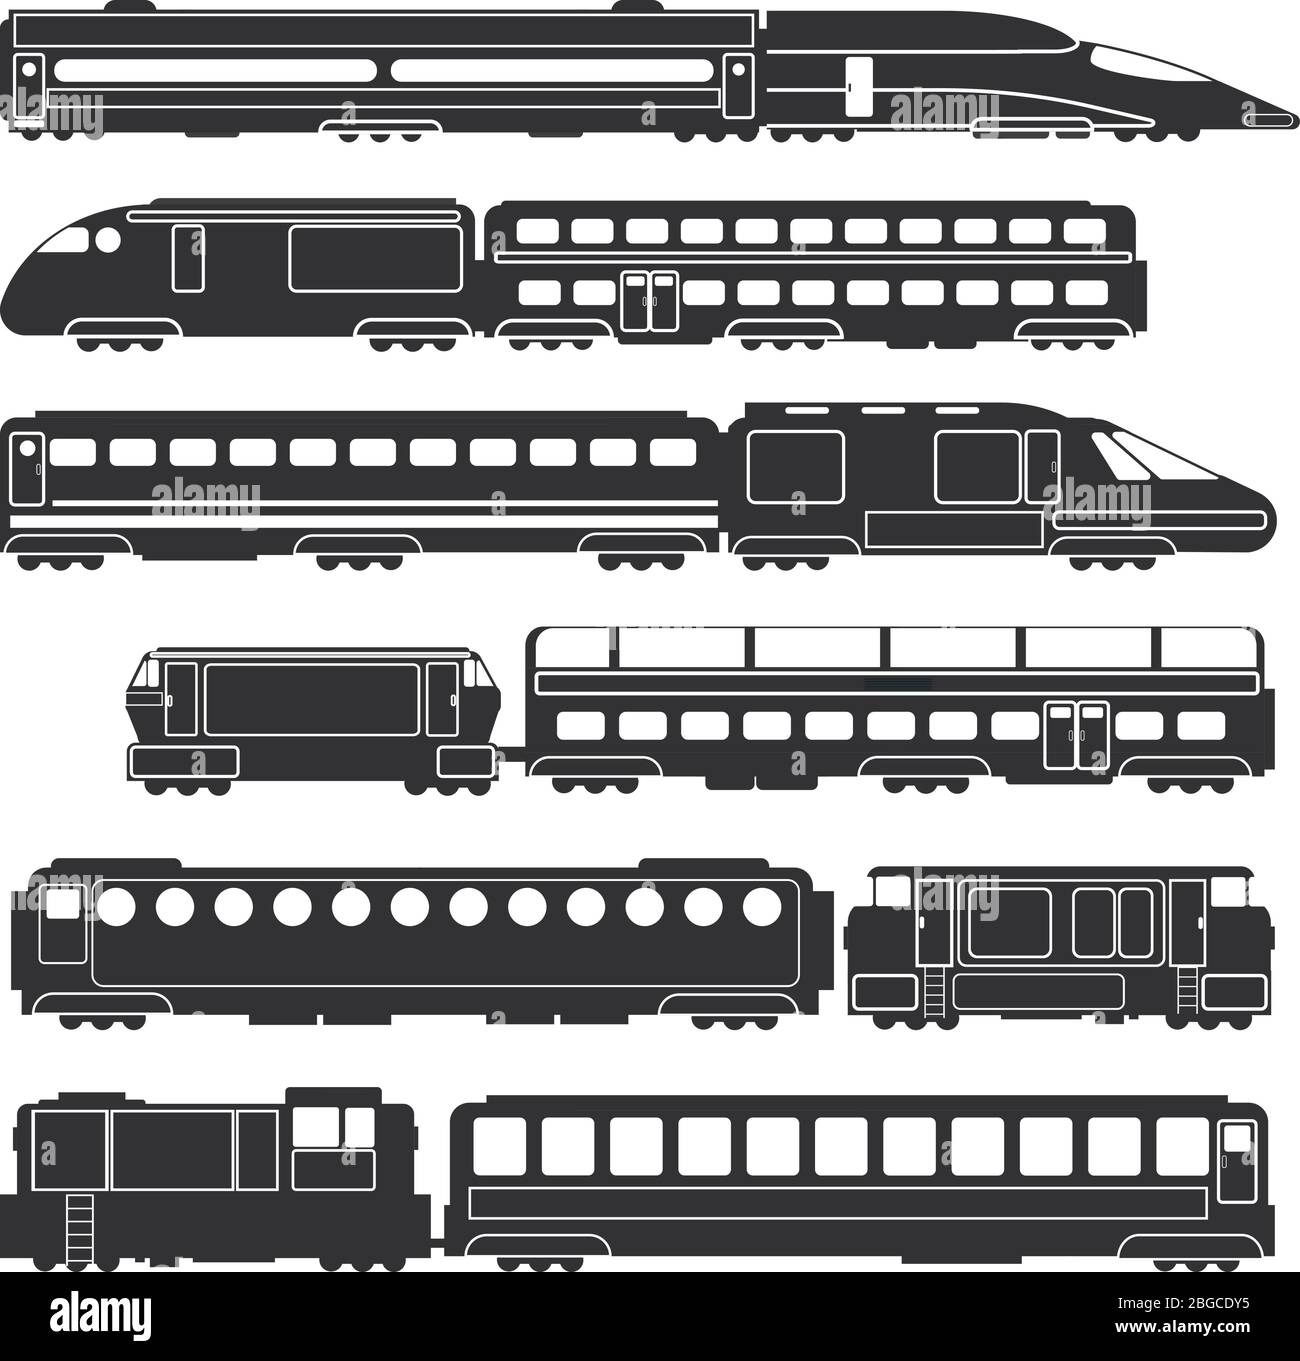 passenger train clipart black and white